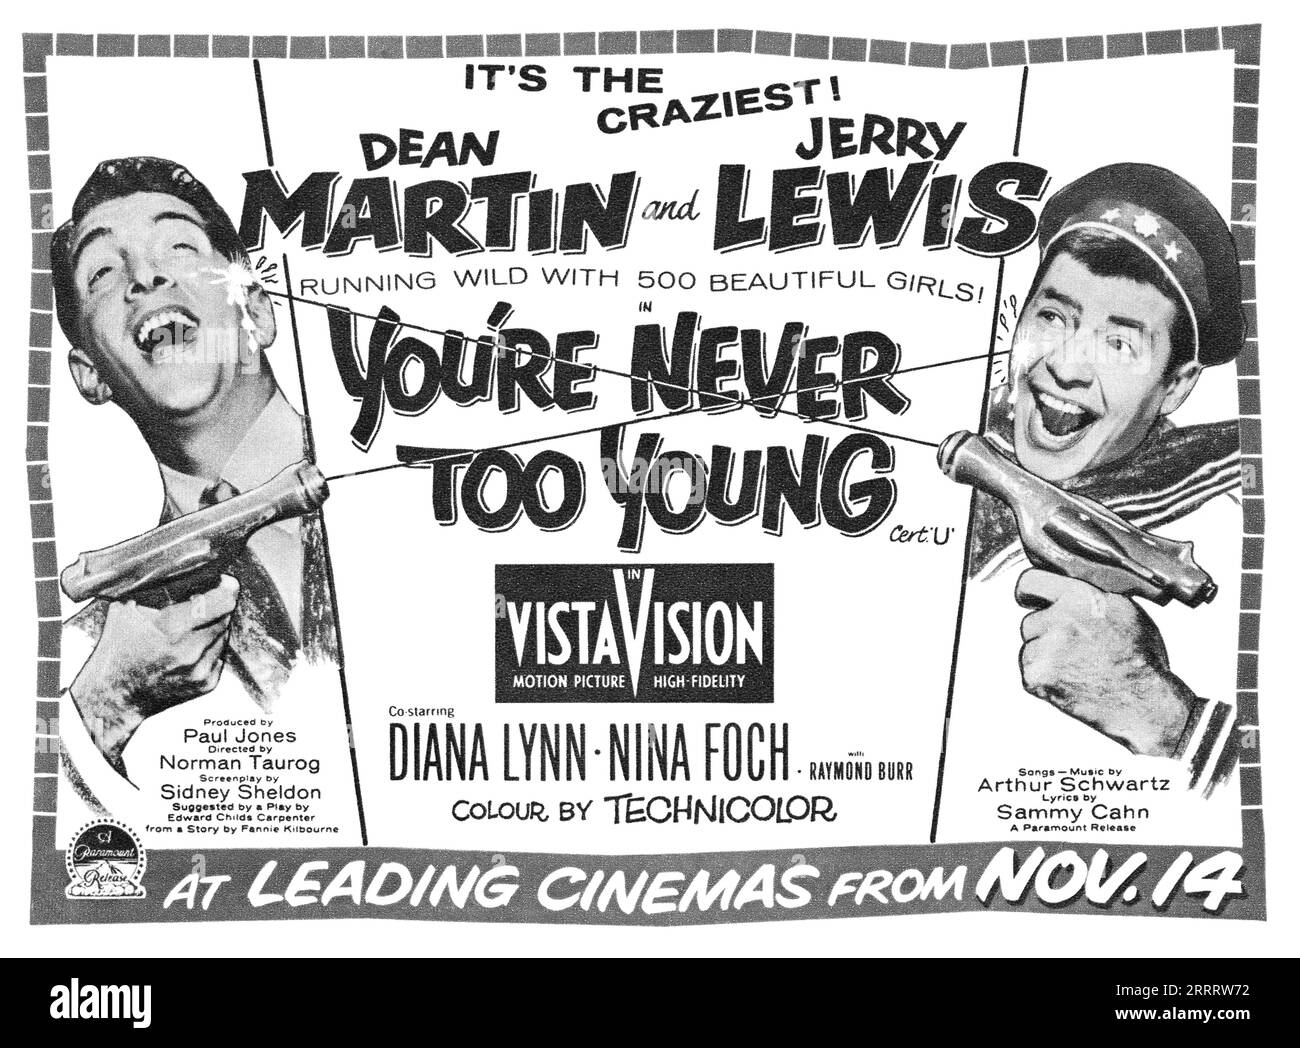 1955 Publicité britannique pour le film You're Never Too Young, avec Dean Martin et Jerry Lewis. Banque D'Images